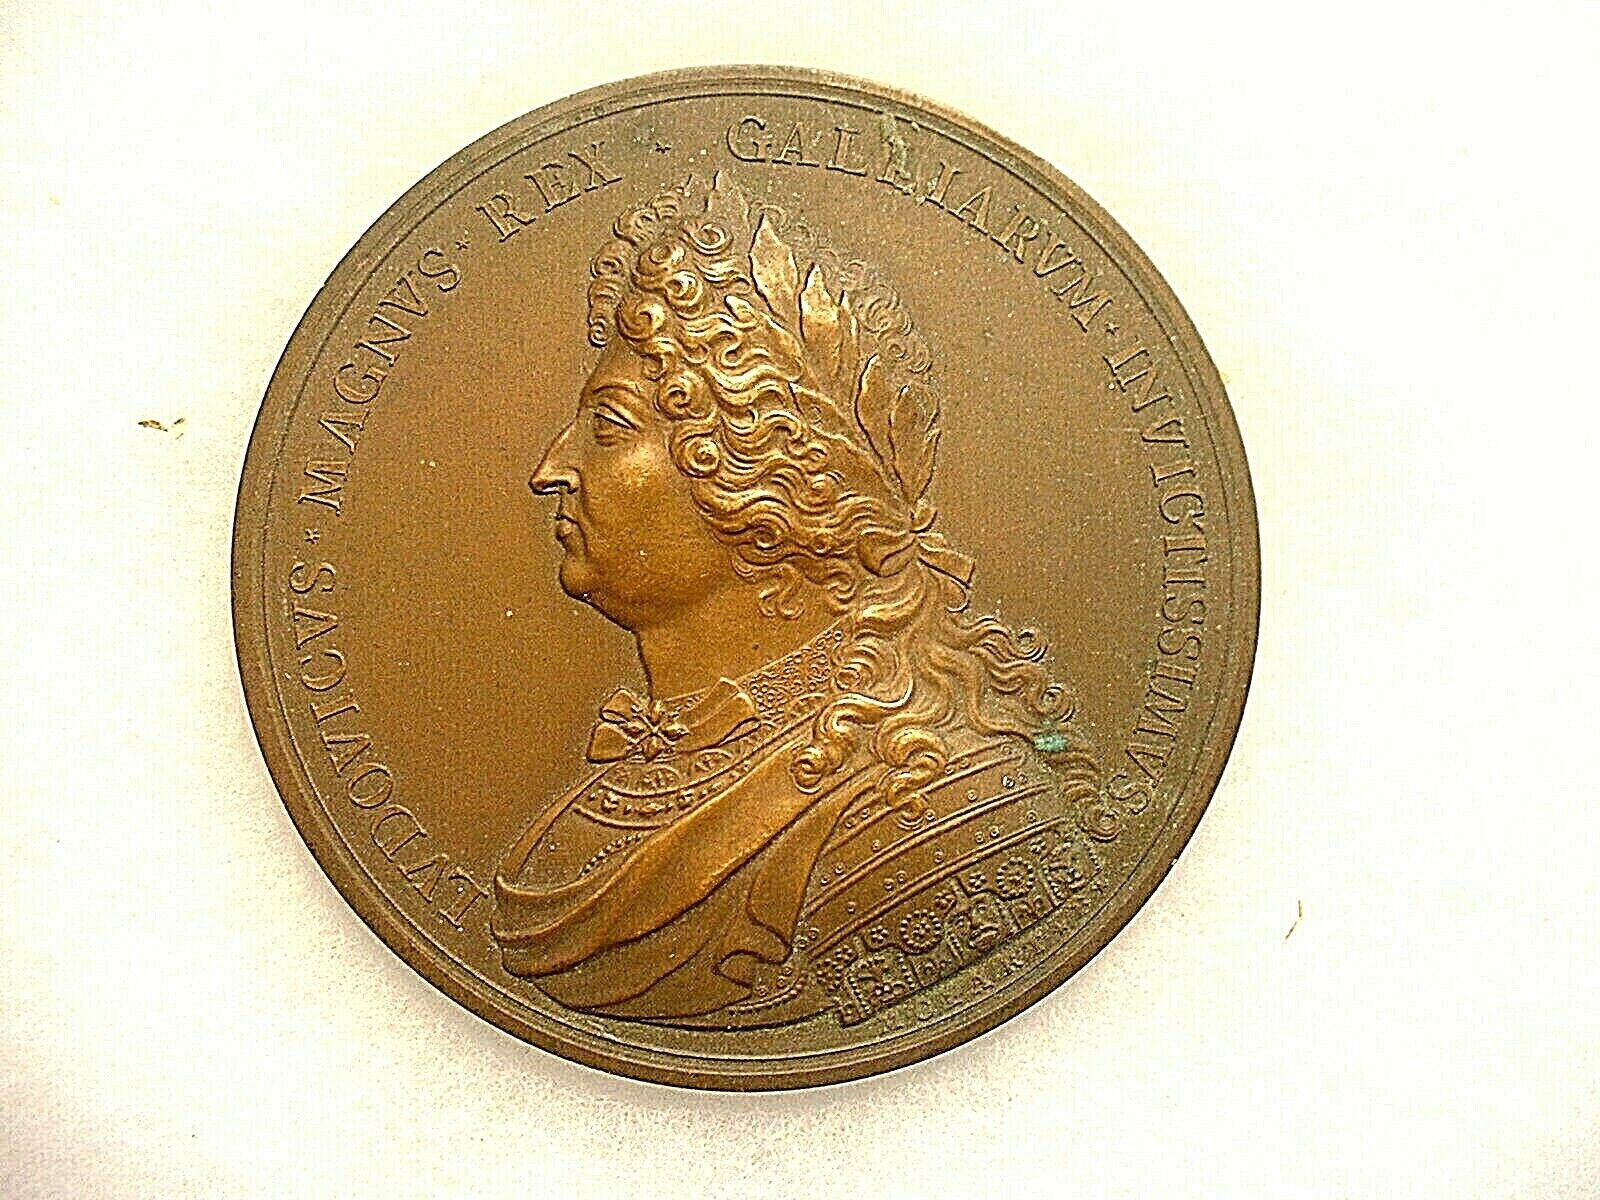 Superb Antique Ludovicus Magnus Rex Bronze Medallion by Molart F. 